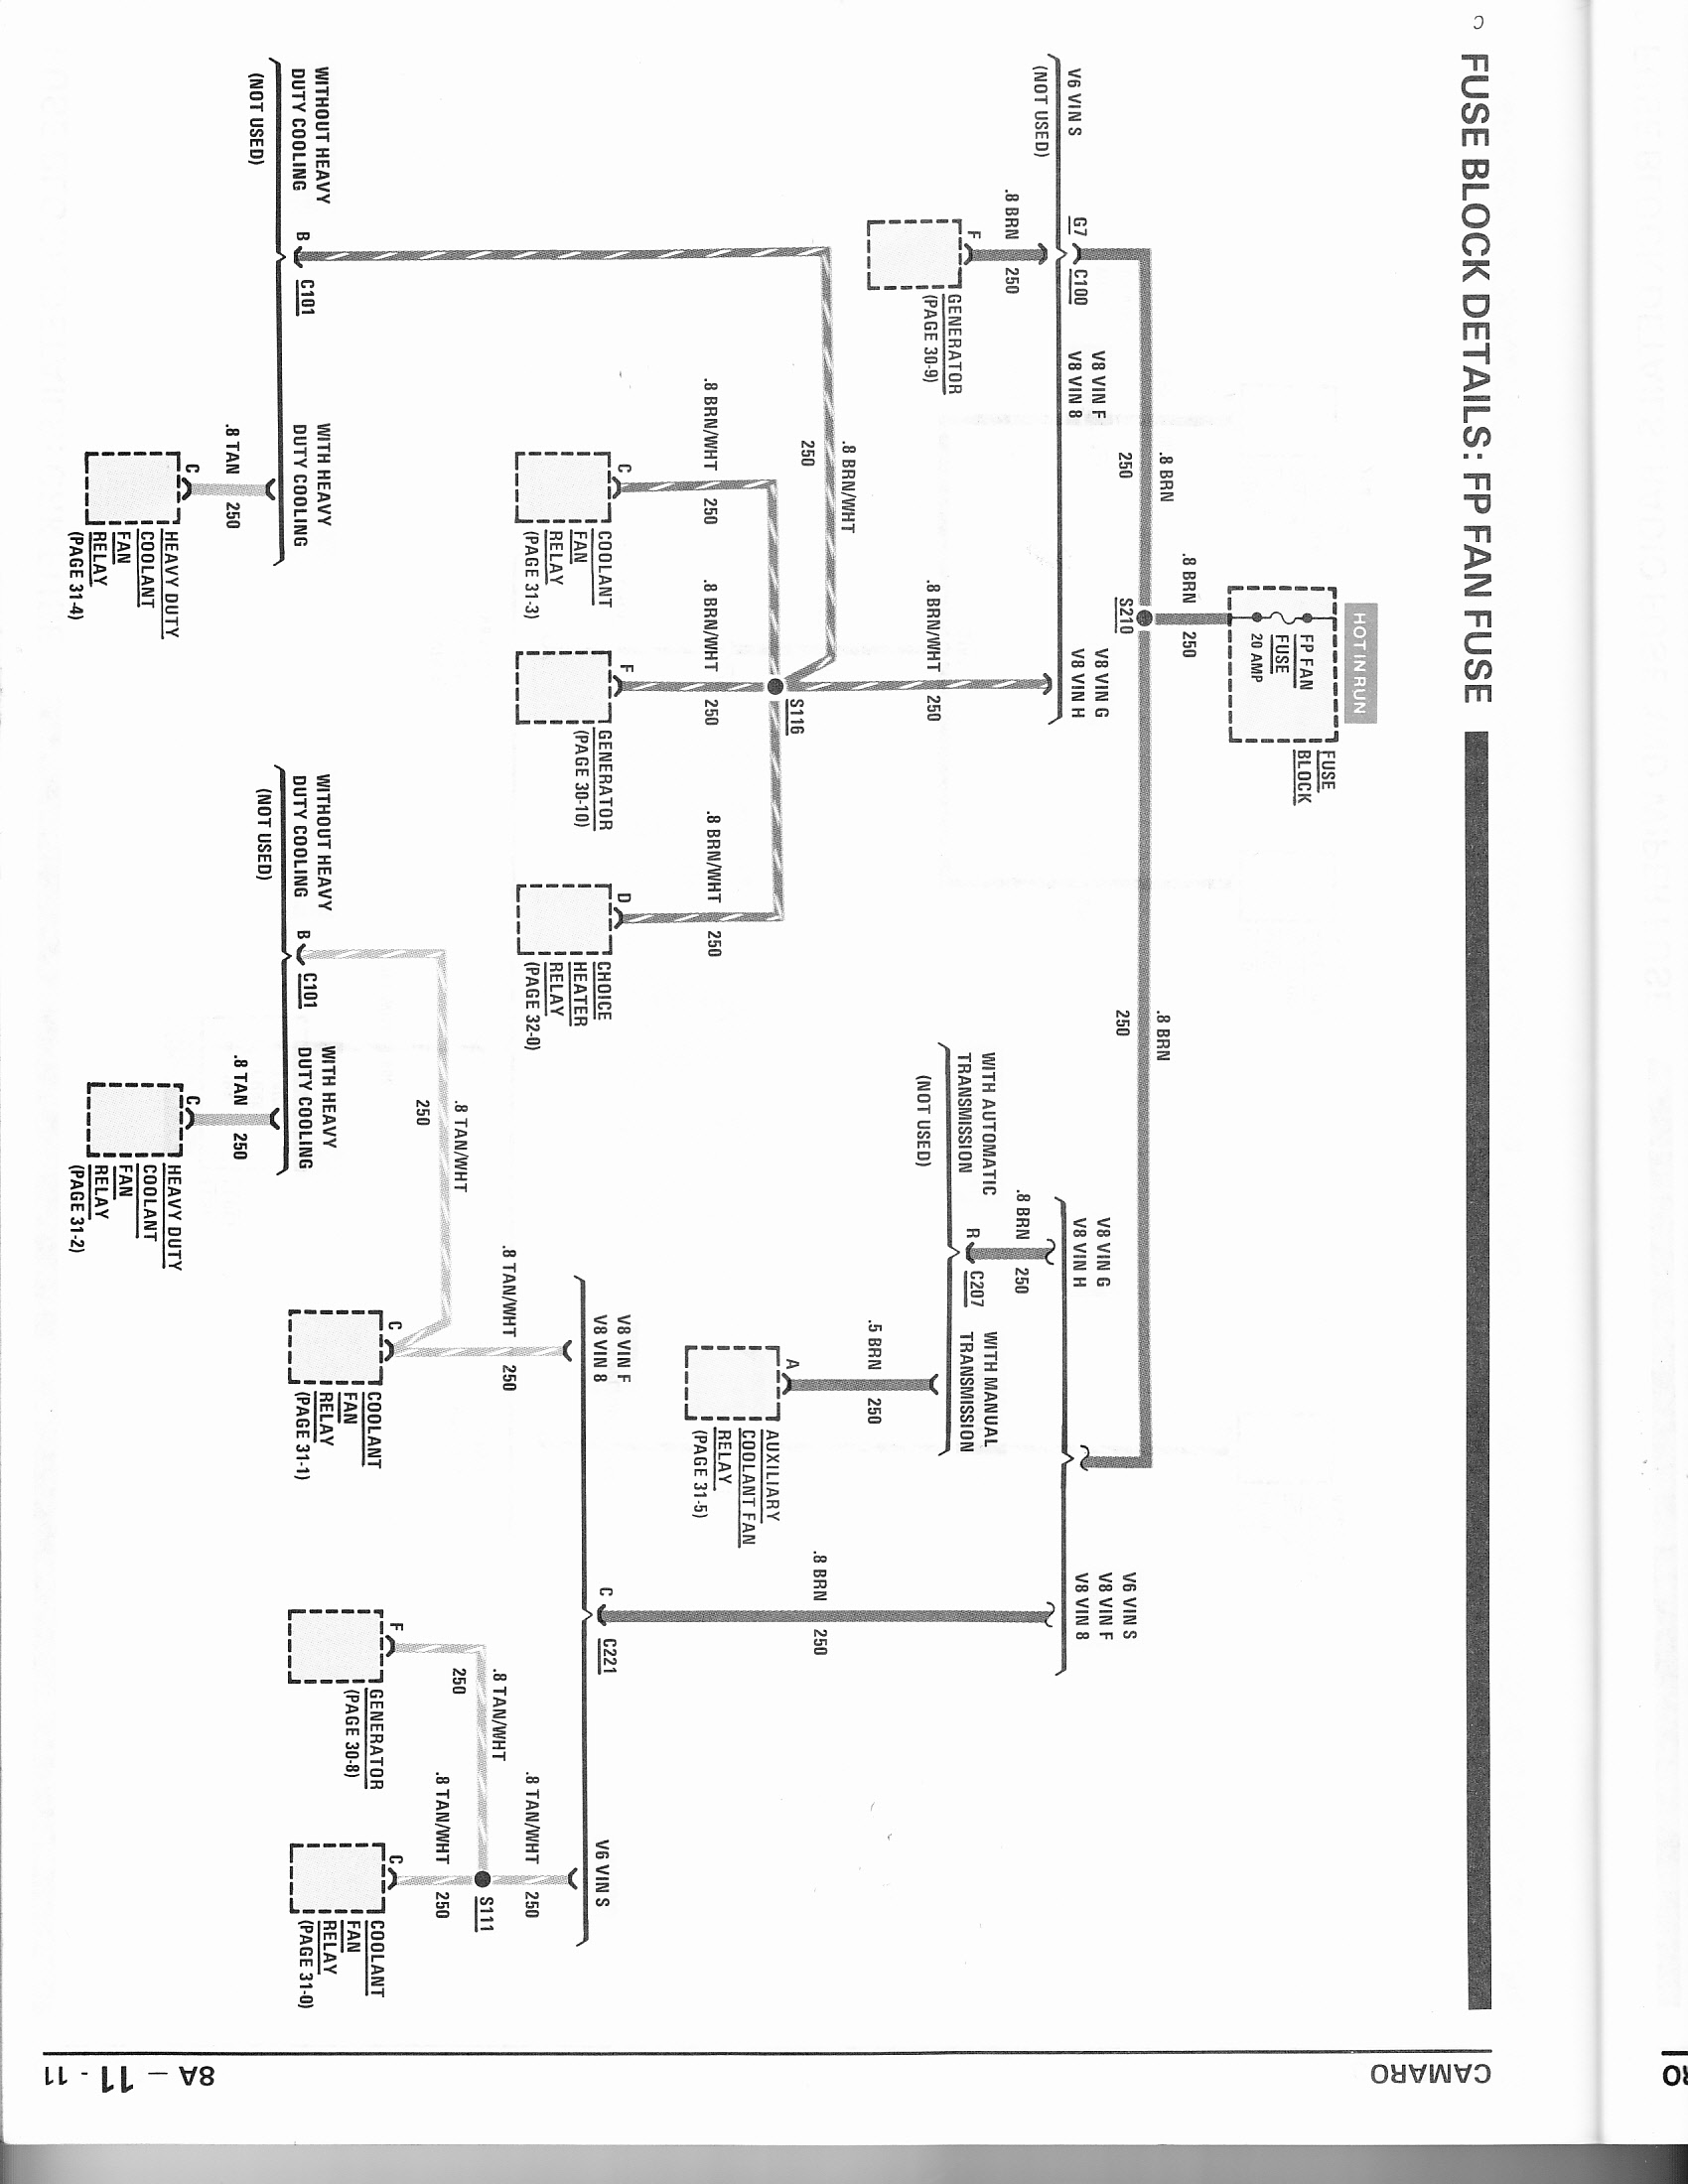 d wiring diagrams fp fan